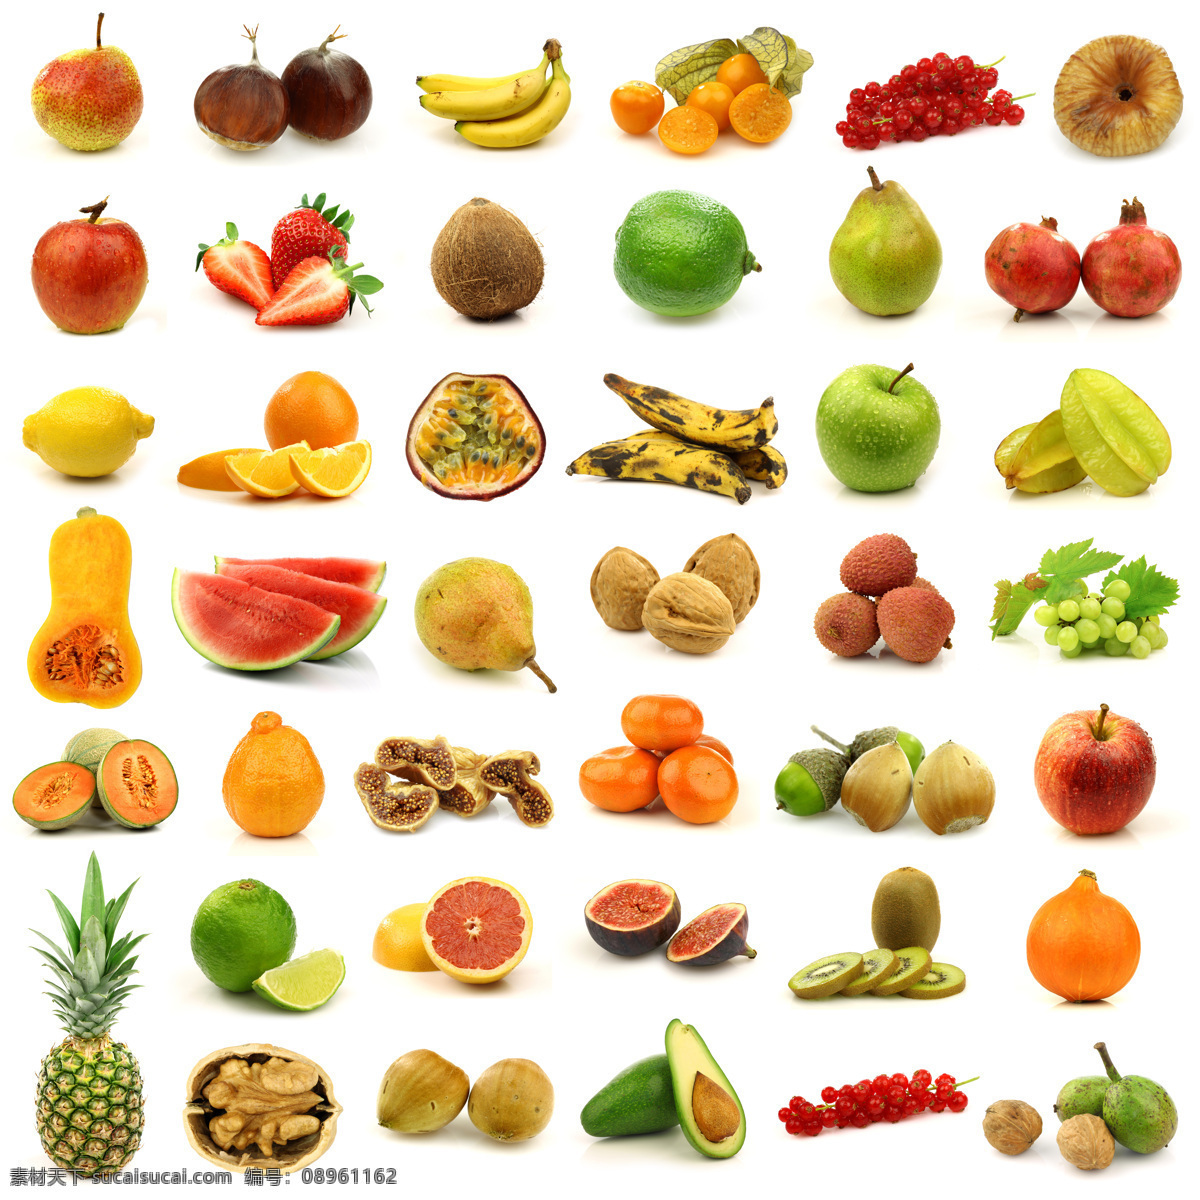 各种水果 食物 水果 合集 菠萝 木瓜 西瓜 西柚 苹果 香蕉 杨桃 橙子 水果蔬菜 餐饮美食 白色